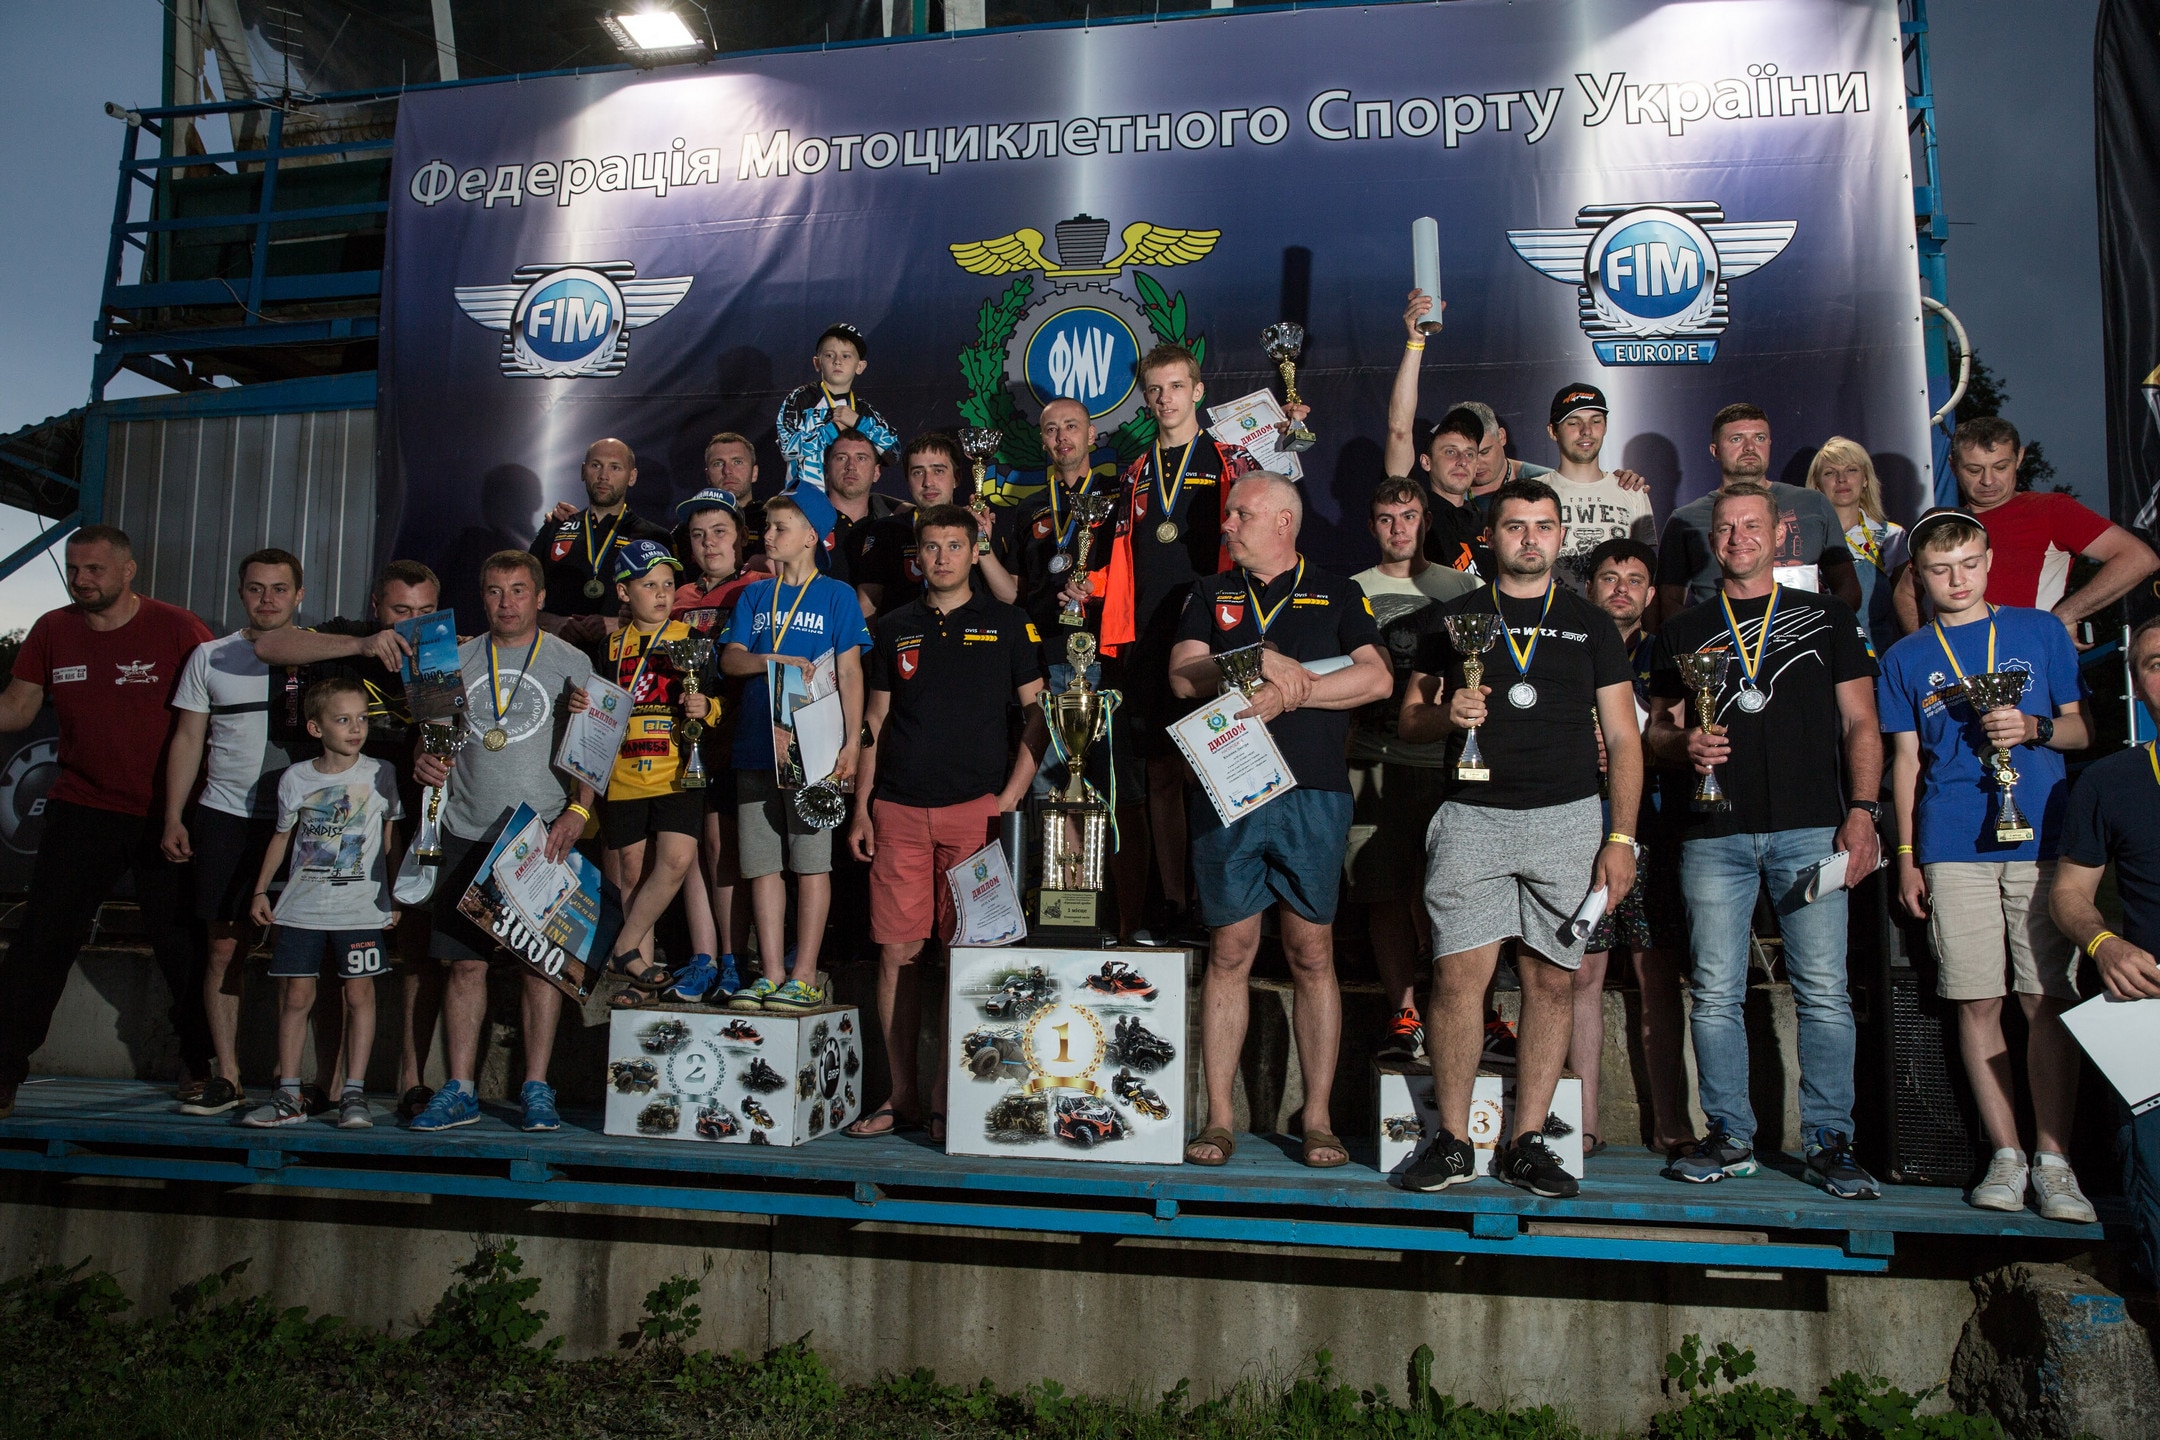 2-й етап Чемпіонату України з Кантрі Кросу 2020 року - як це було